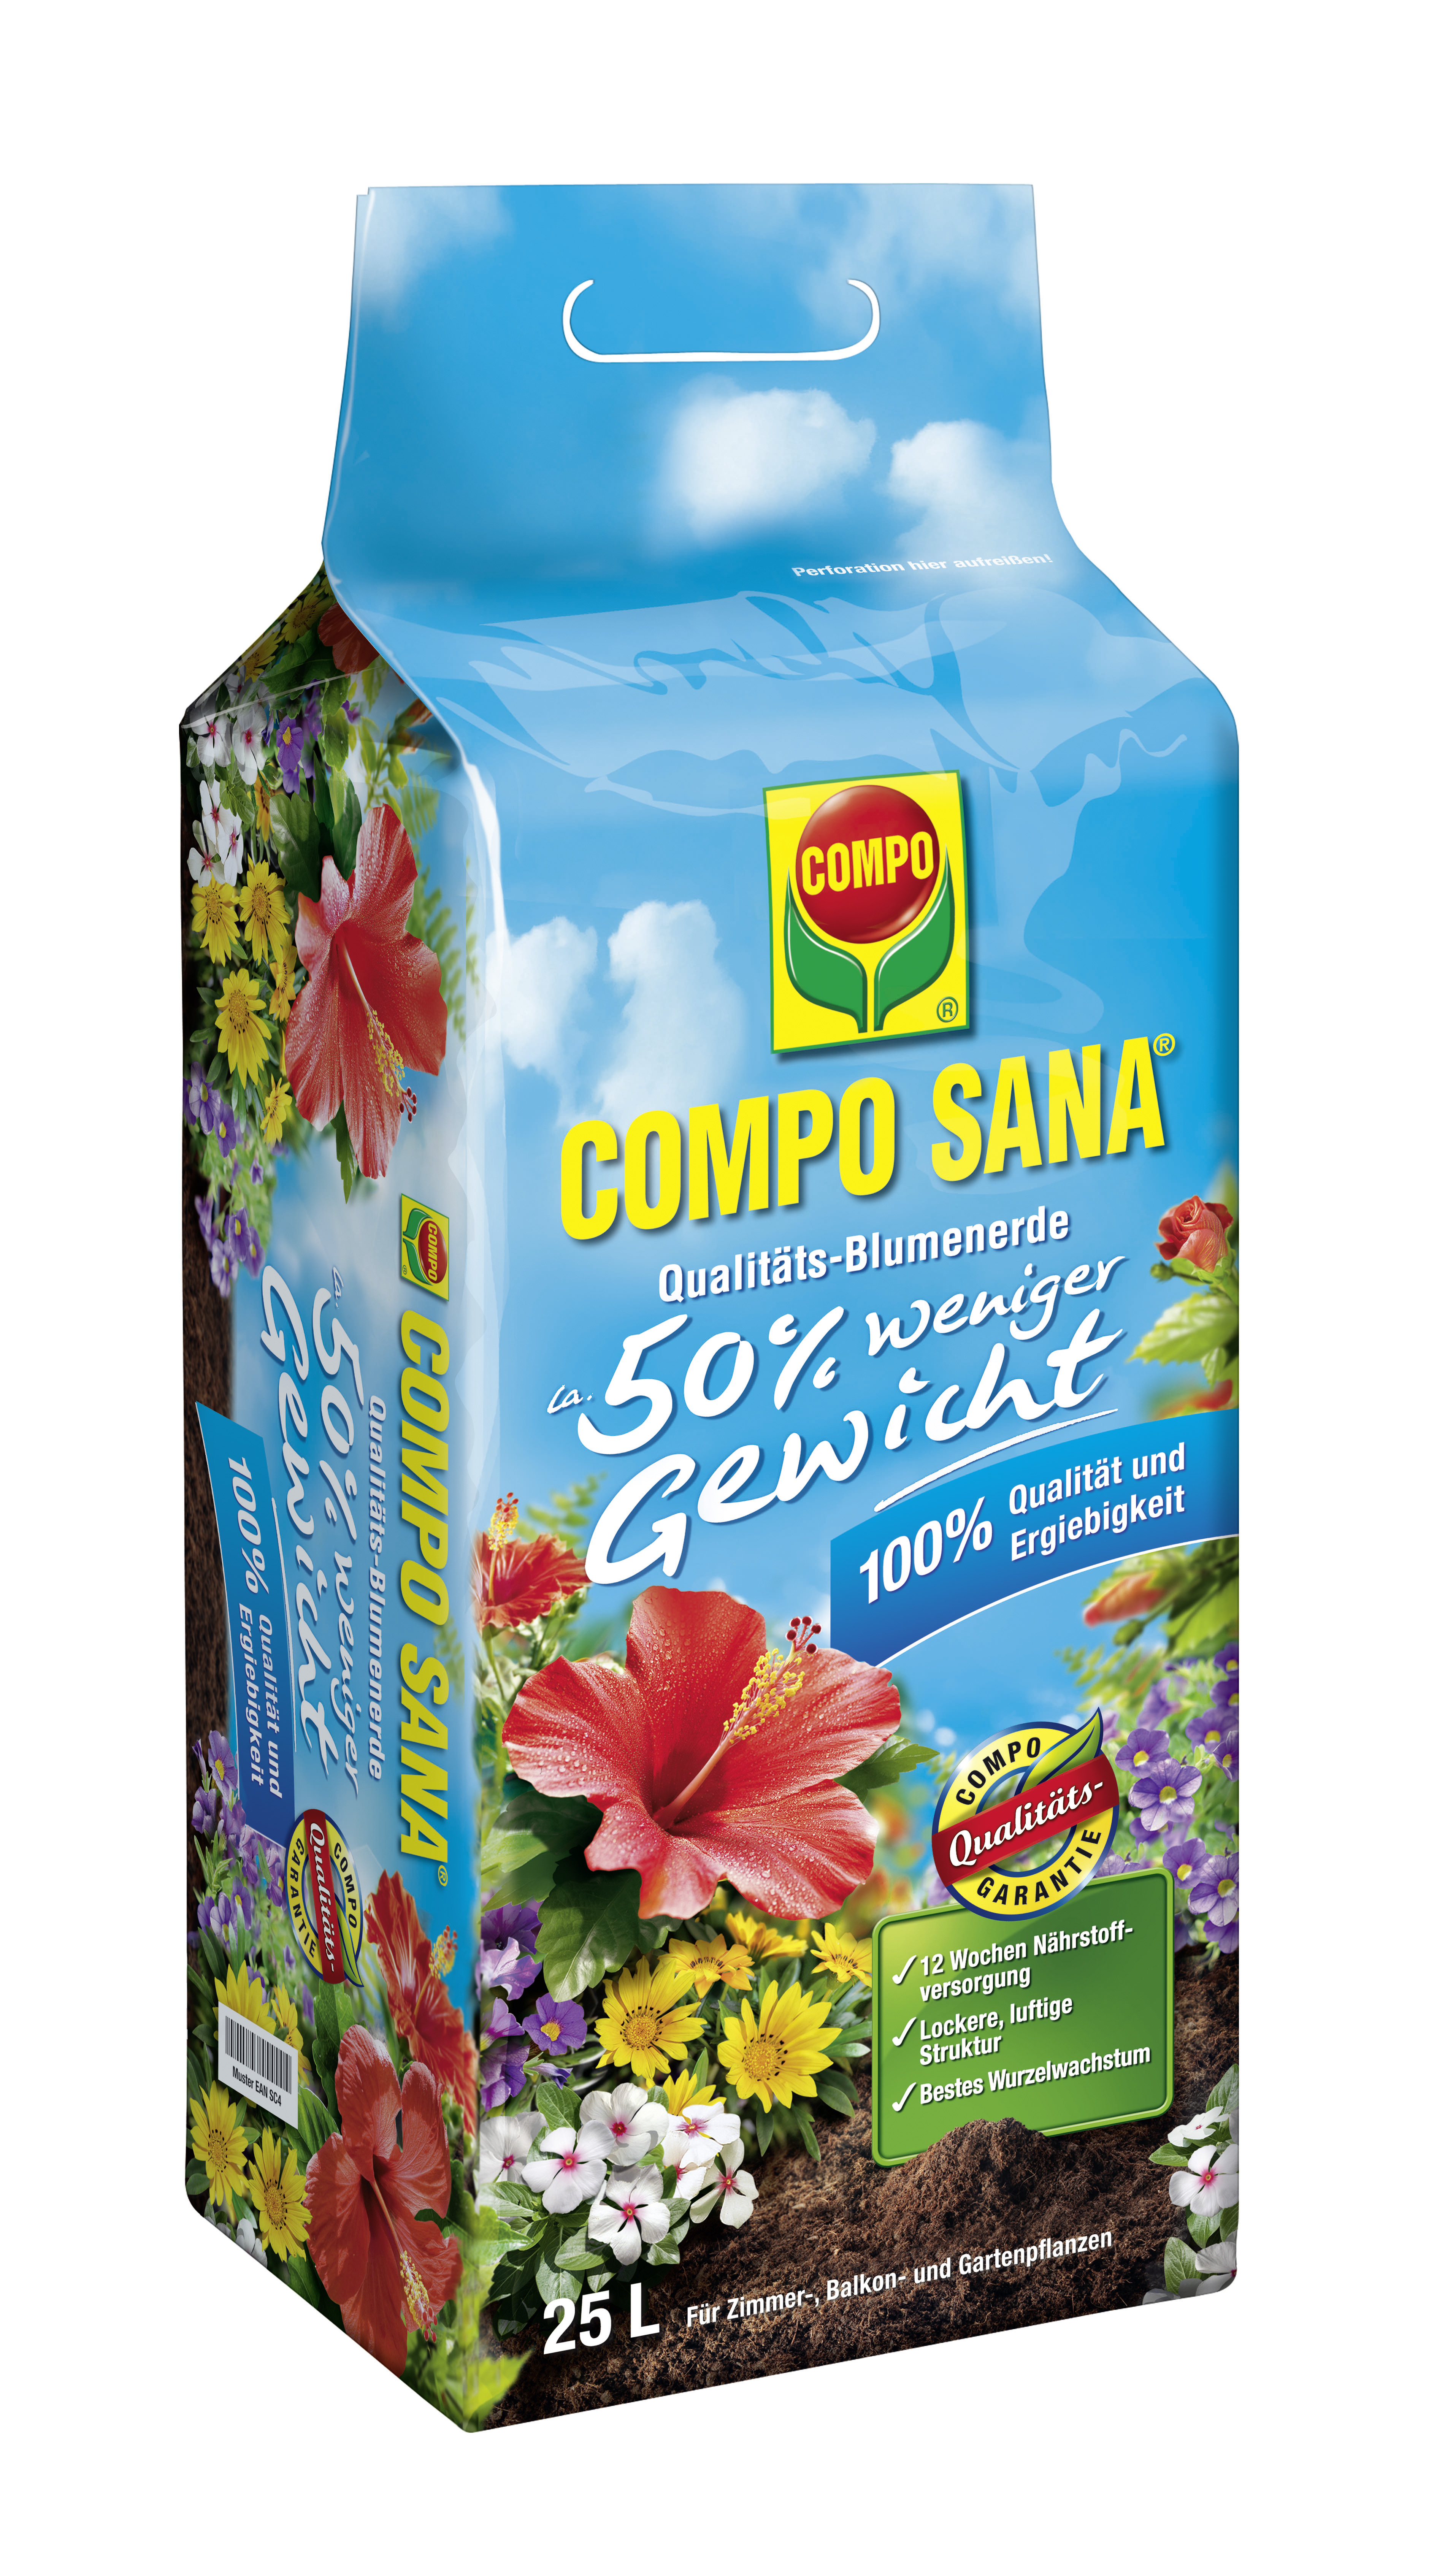 COMPO SANA® Qualitäts-Blumenerde ca. 50% weniger Gewicht, 25 L